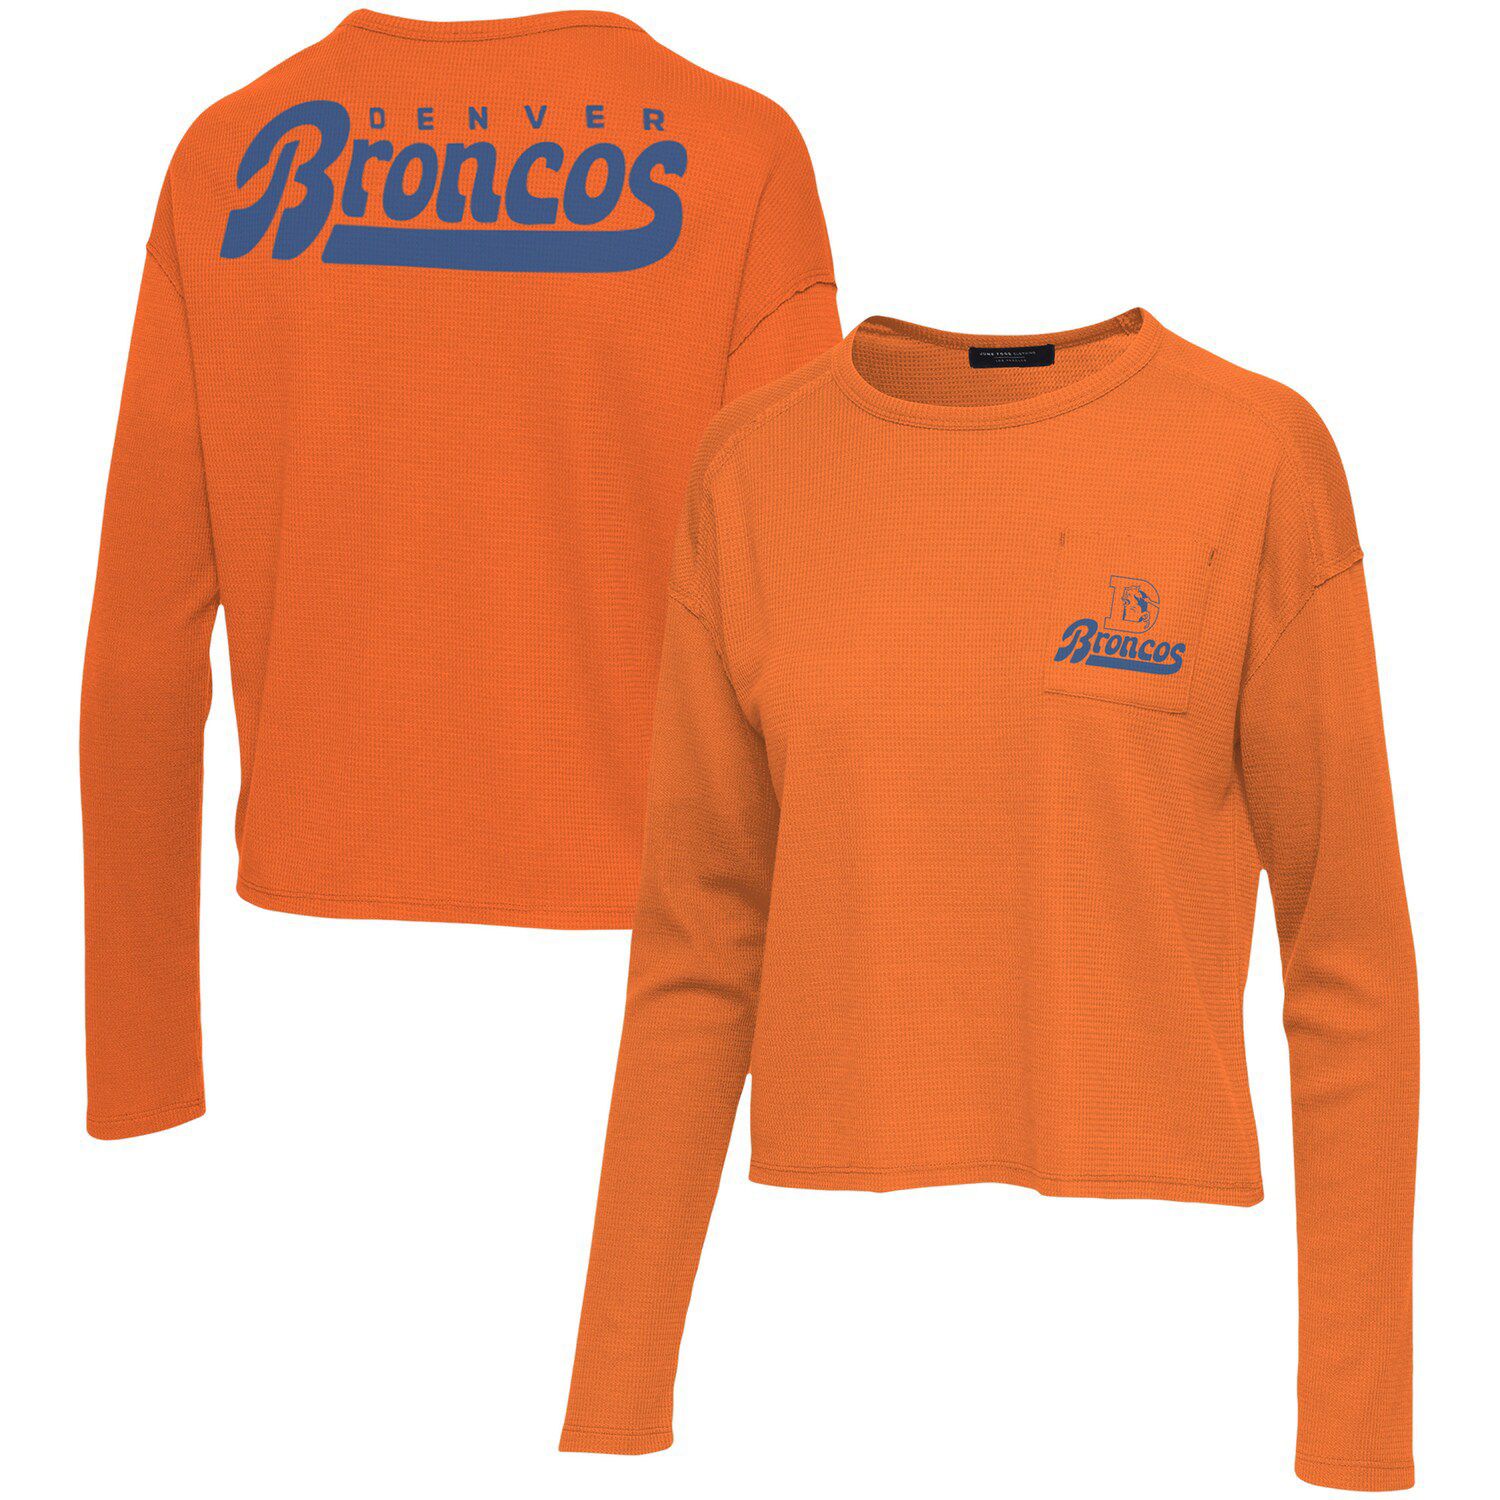 Image for Unbranded Women's Junk Food Orange Denver Broncos Pocket Thermal Long Sleeve T-Shirt at Kohl's.